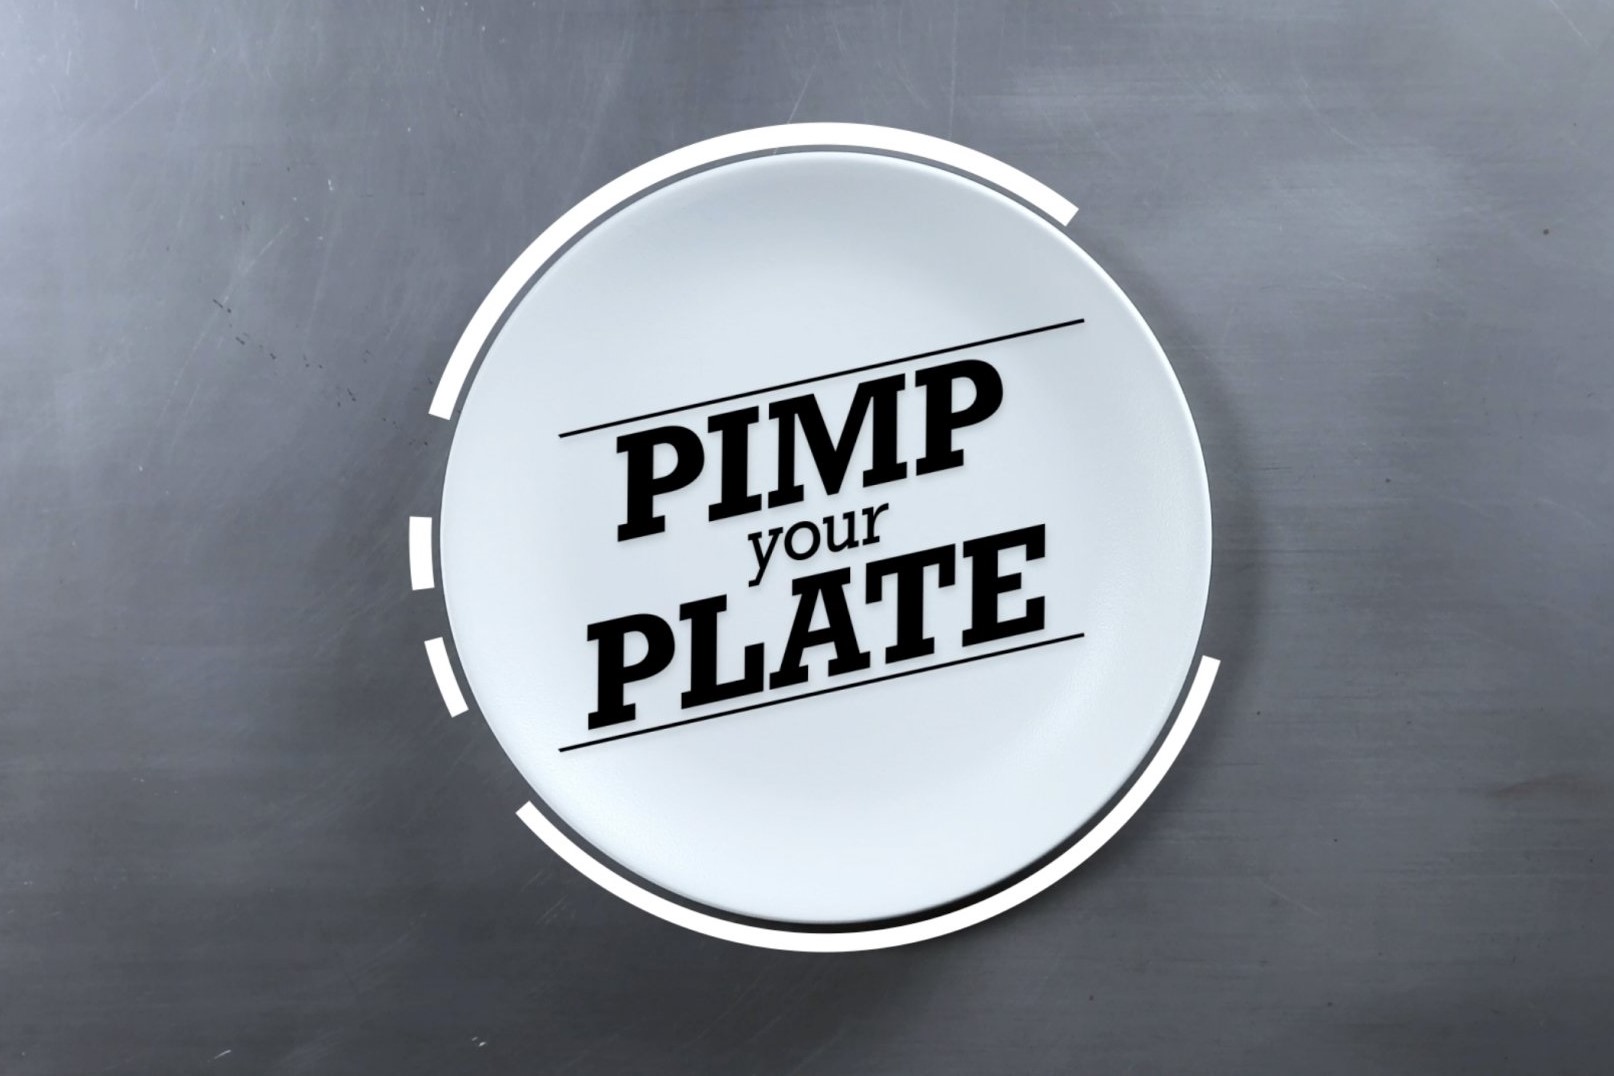 Pimp your plate